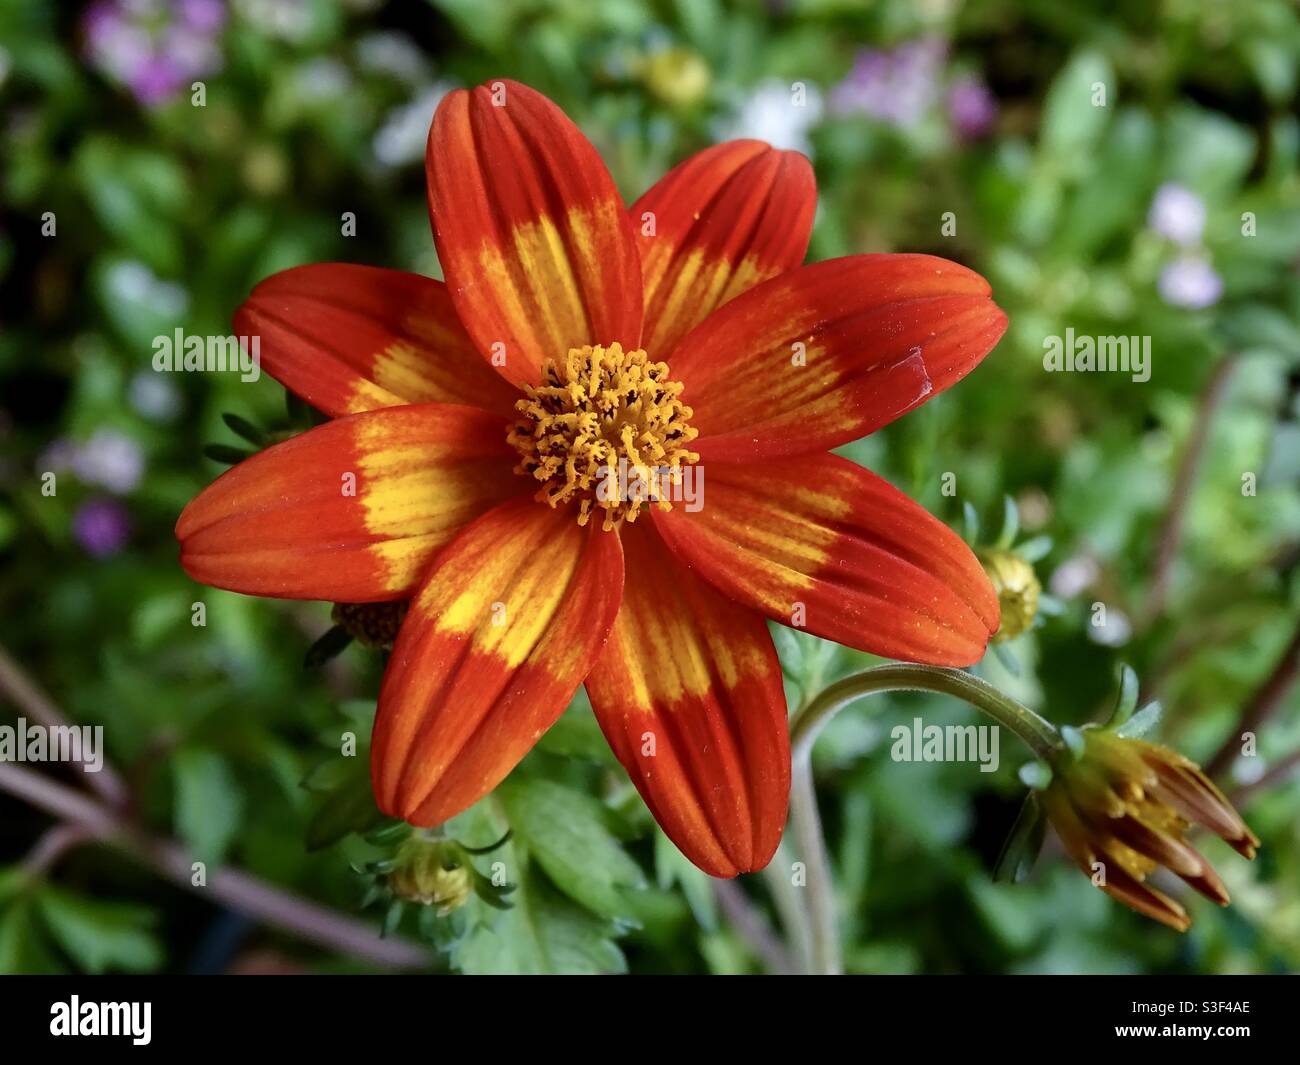 Beautiful orange and yellow biden flower Stock Photo